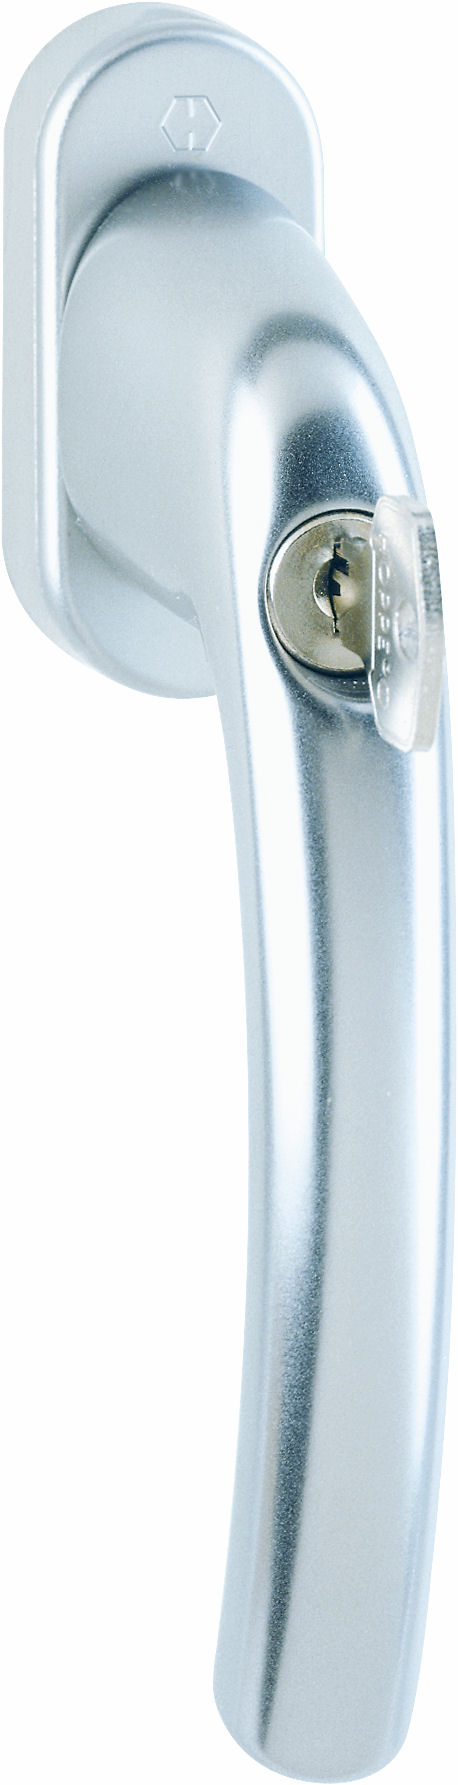 Martellina dk con chiave HOPPE modello TOKYO per serramento con rosetta con quadro 35 in alluminio argento